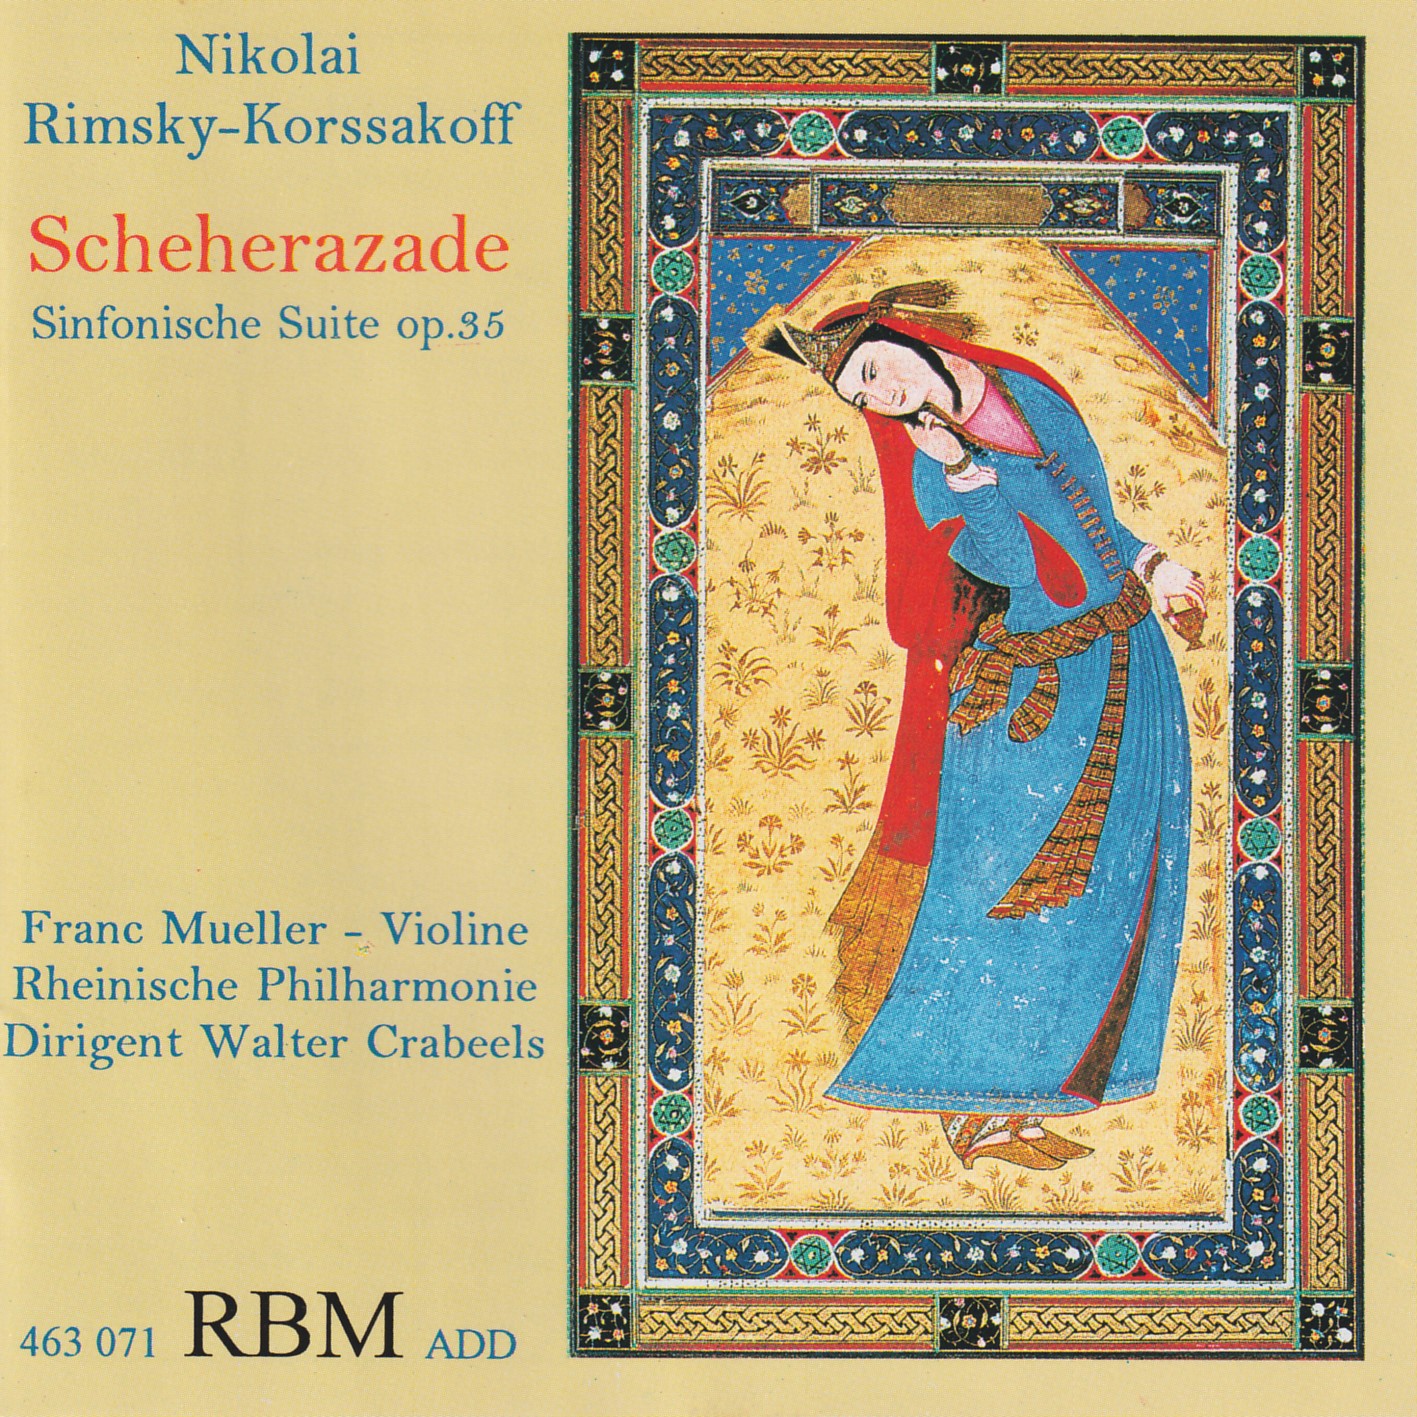 Nikolai Rimsky-Korssakoff - Scheherazade